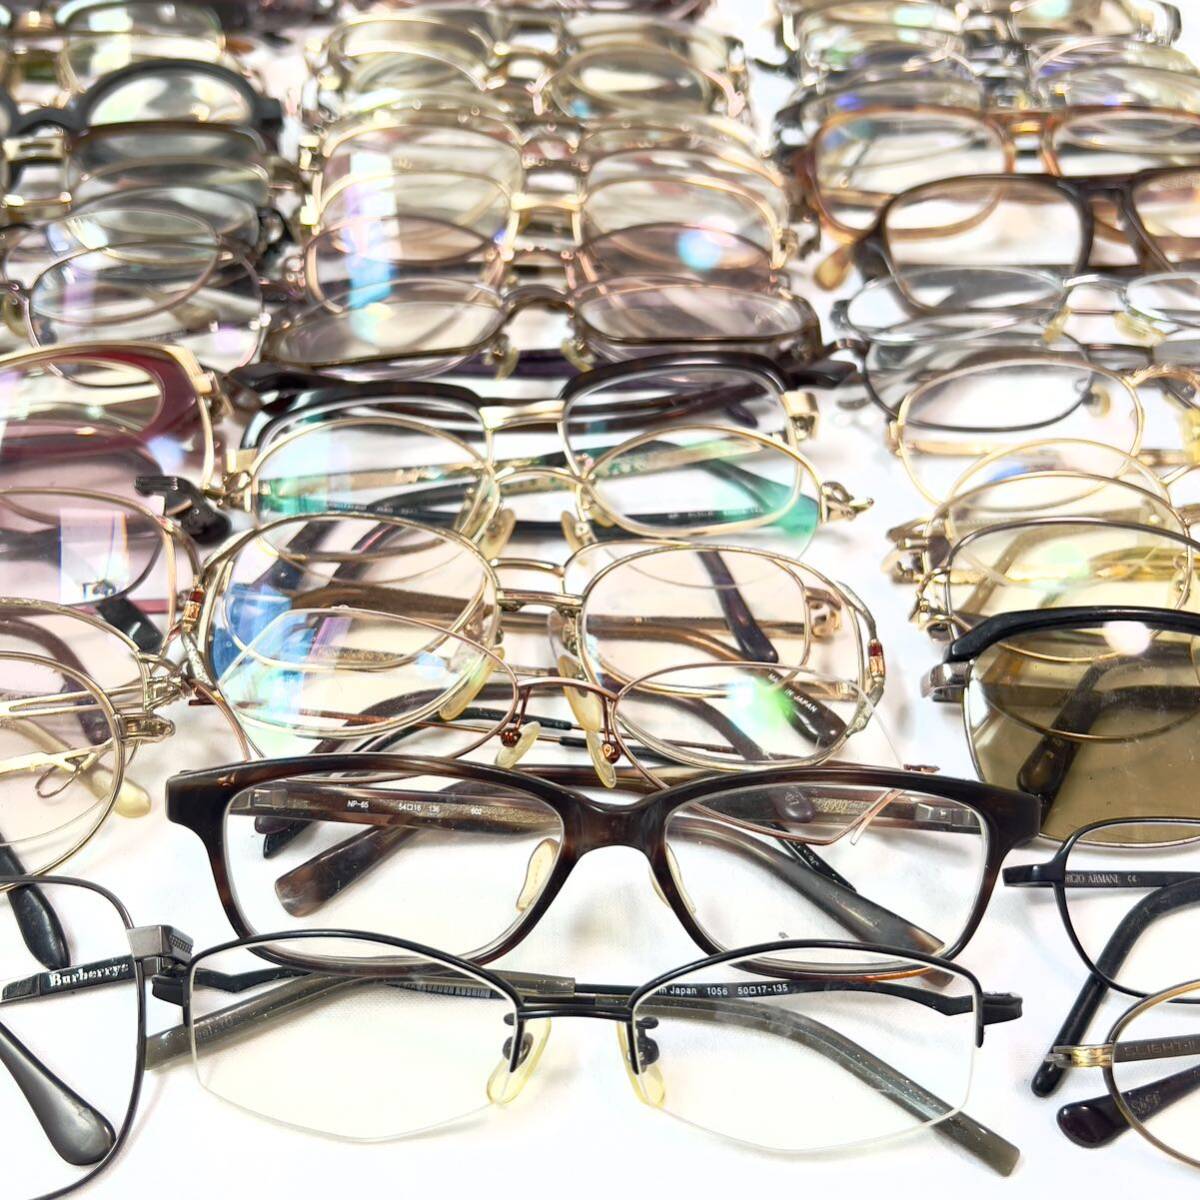  Junk очки очки рама 200 пункт и больше продажа комплектом ⑤ 999.9 Yves Saint-Laurent Burberry и т.п. солнцезащитные очки совместно много комплект 